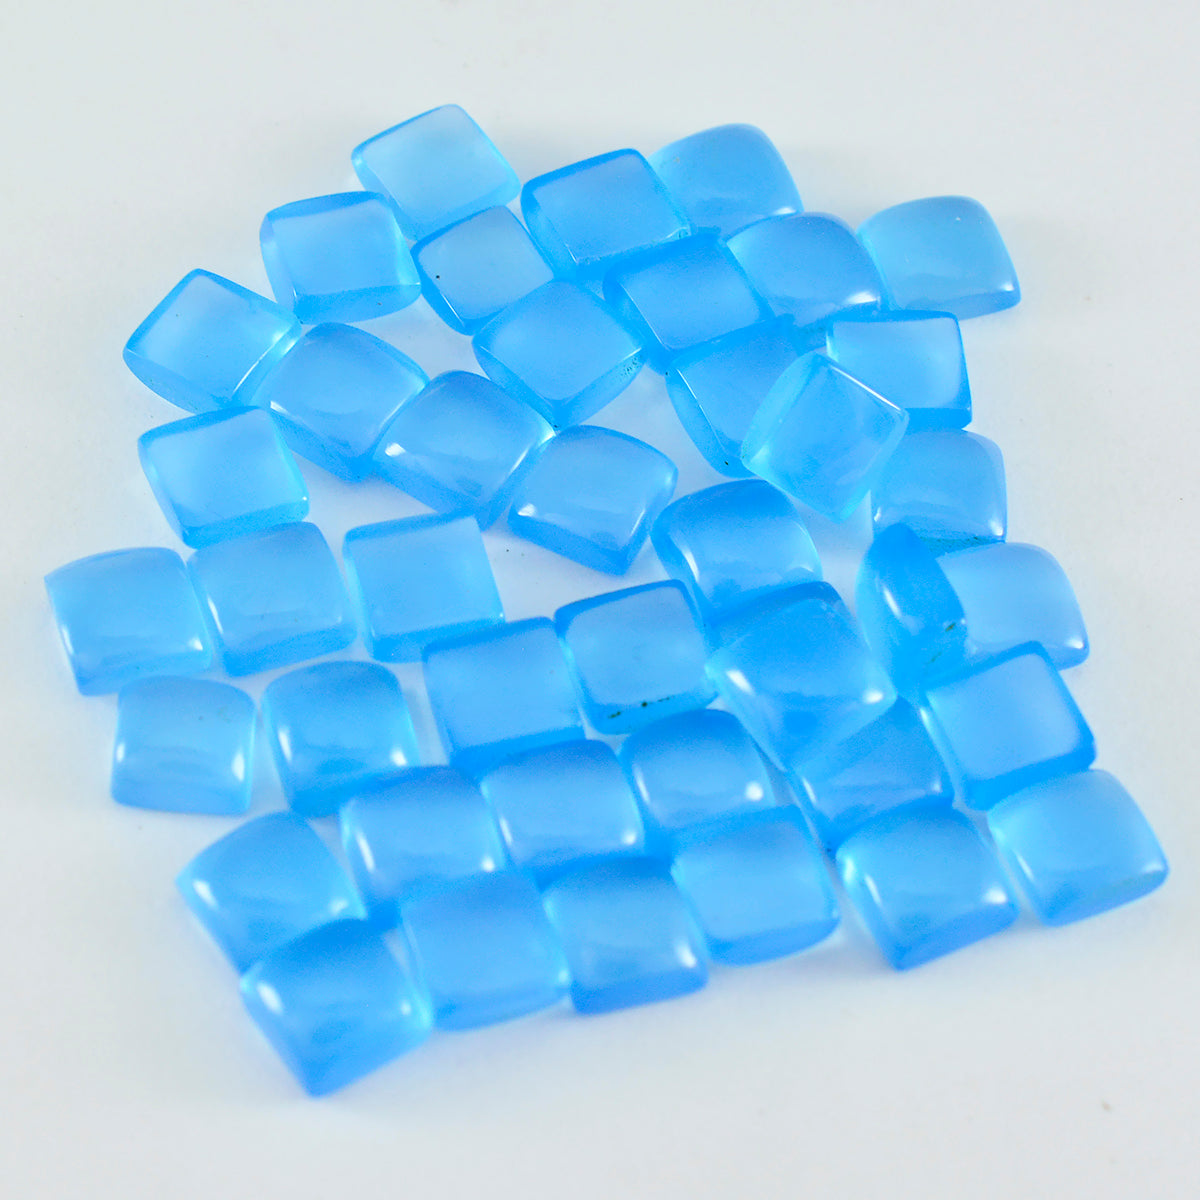 Riyogems 1PC blauwe chalcedoon cabochon 5x5 mm vierkante vorm mooie kwaliteit losse edelsteen